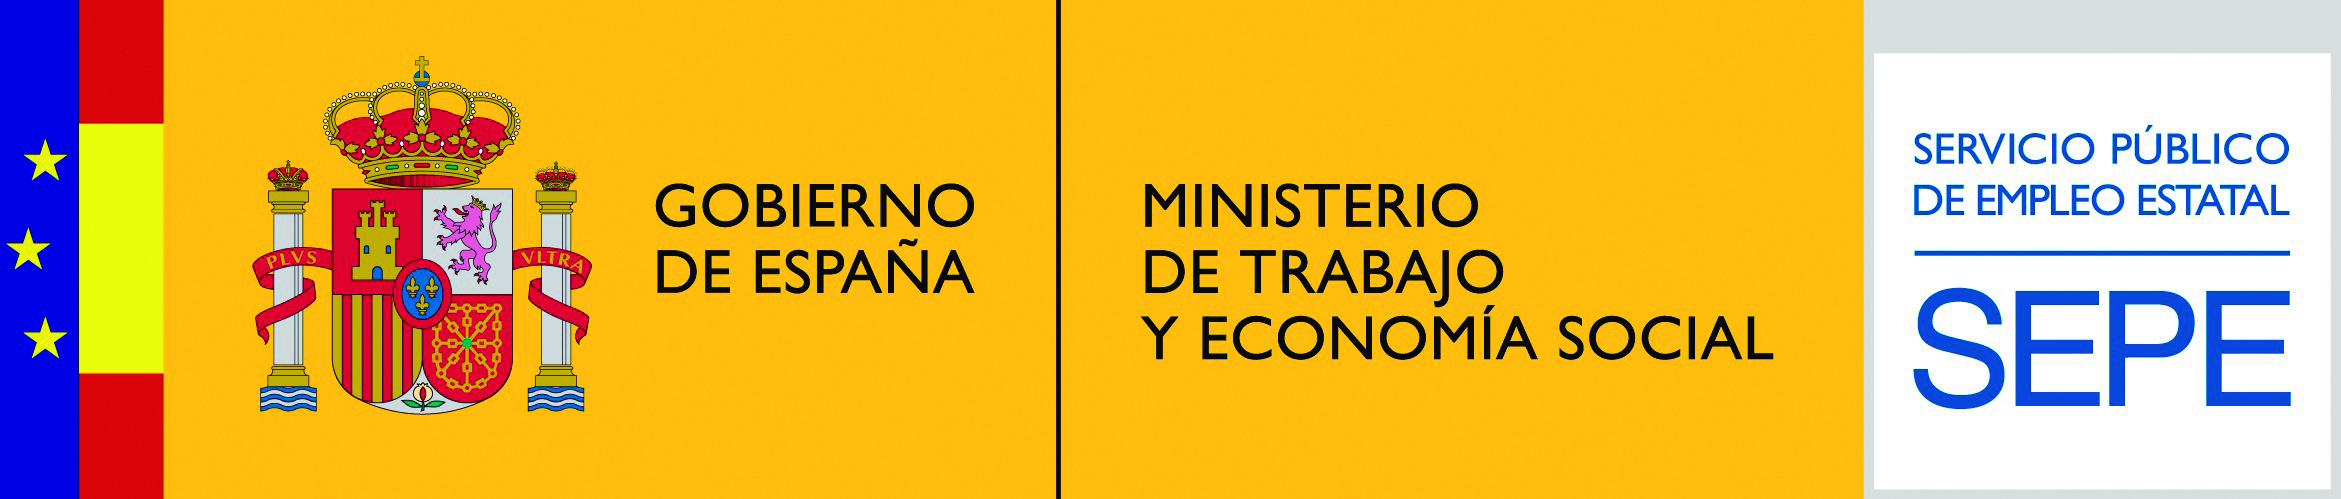 Ministerio de Trabajo y Economía social